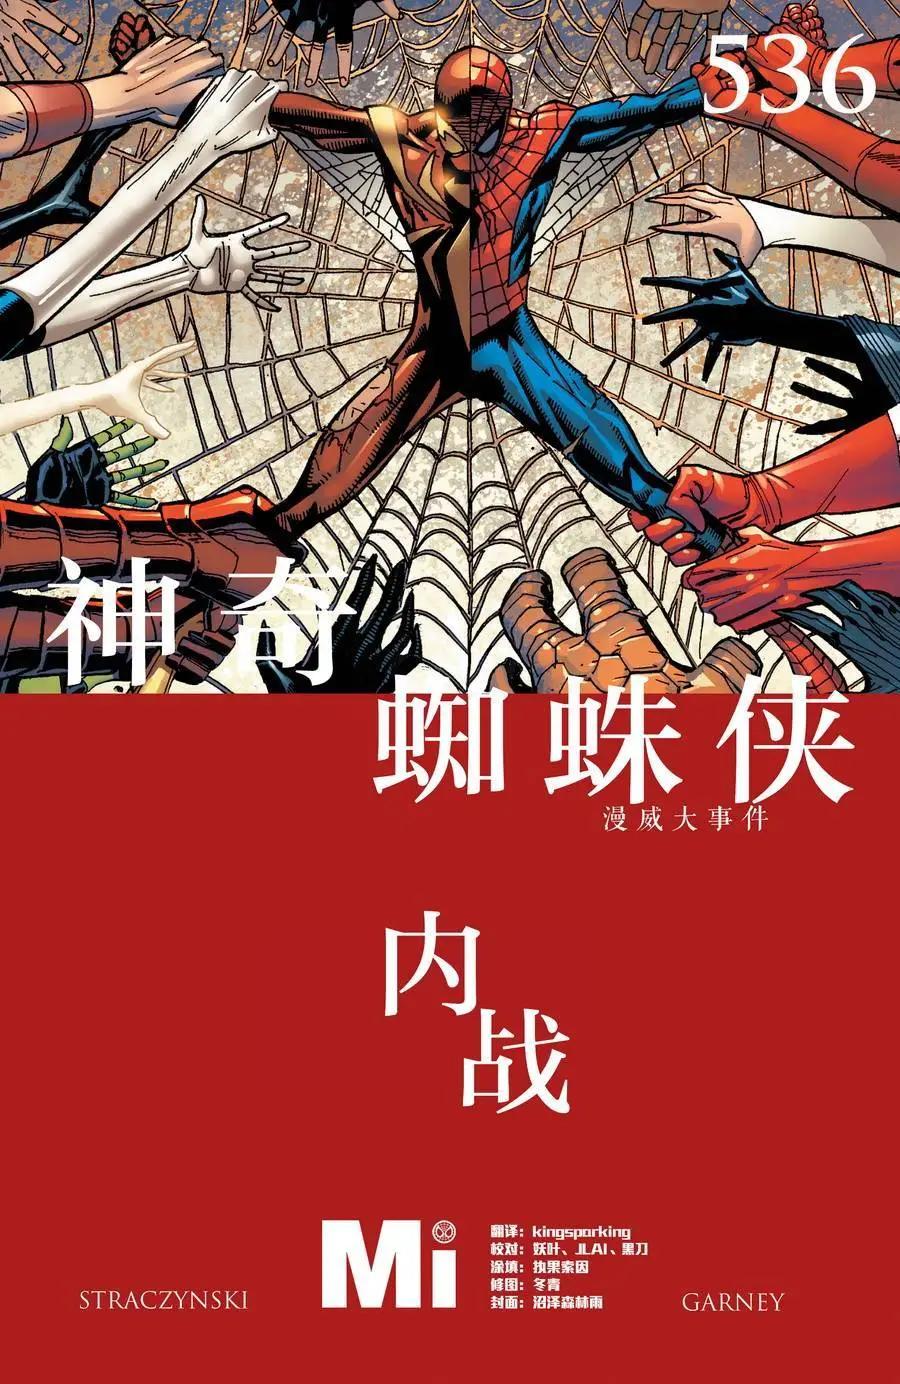 内战2006 - 神奇蜘蛛侠#536 - 1